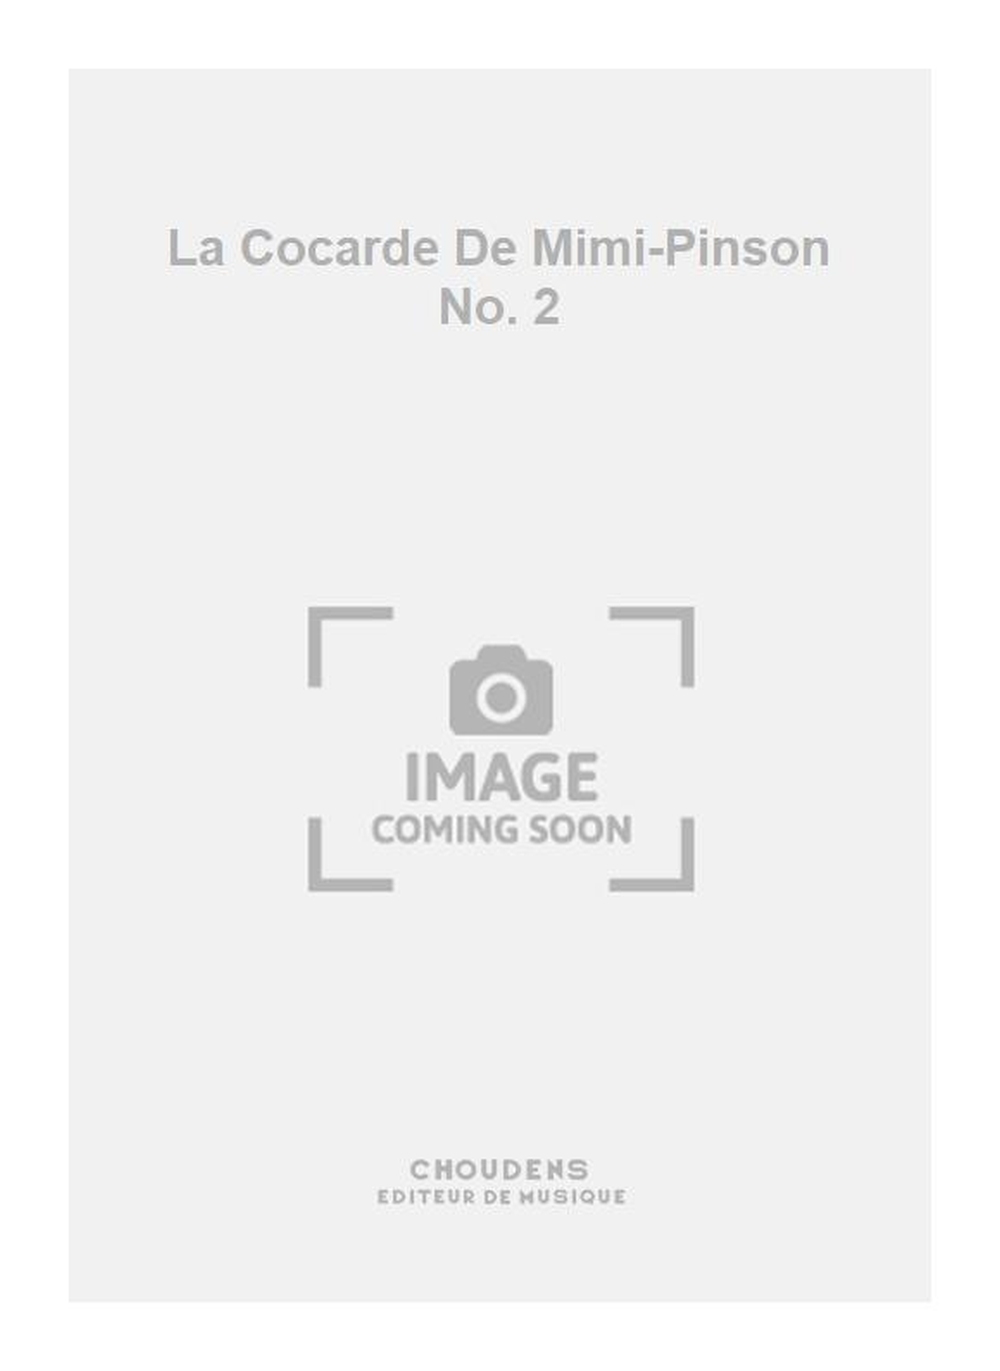 La Cocarde De Mimi-Pinson No. 2